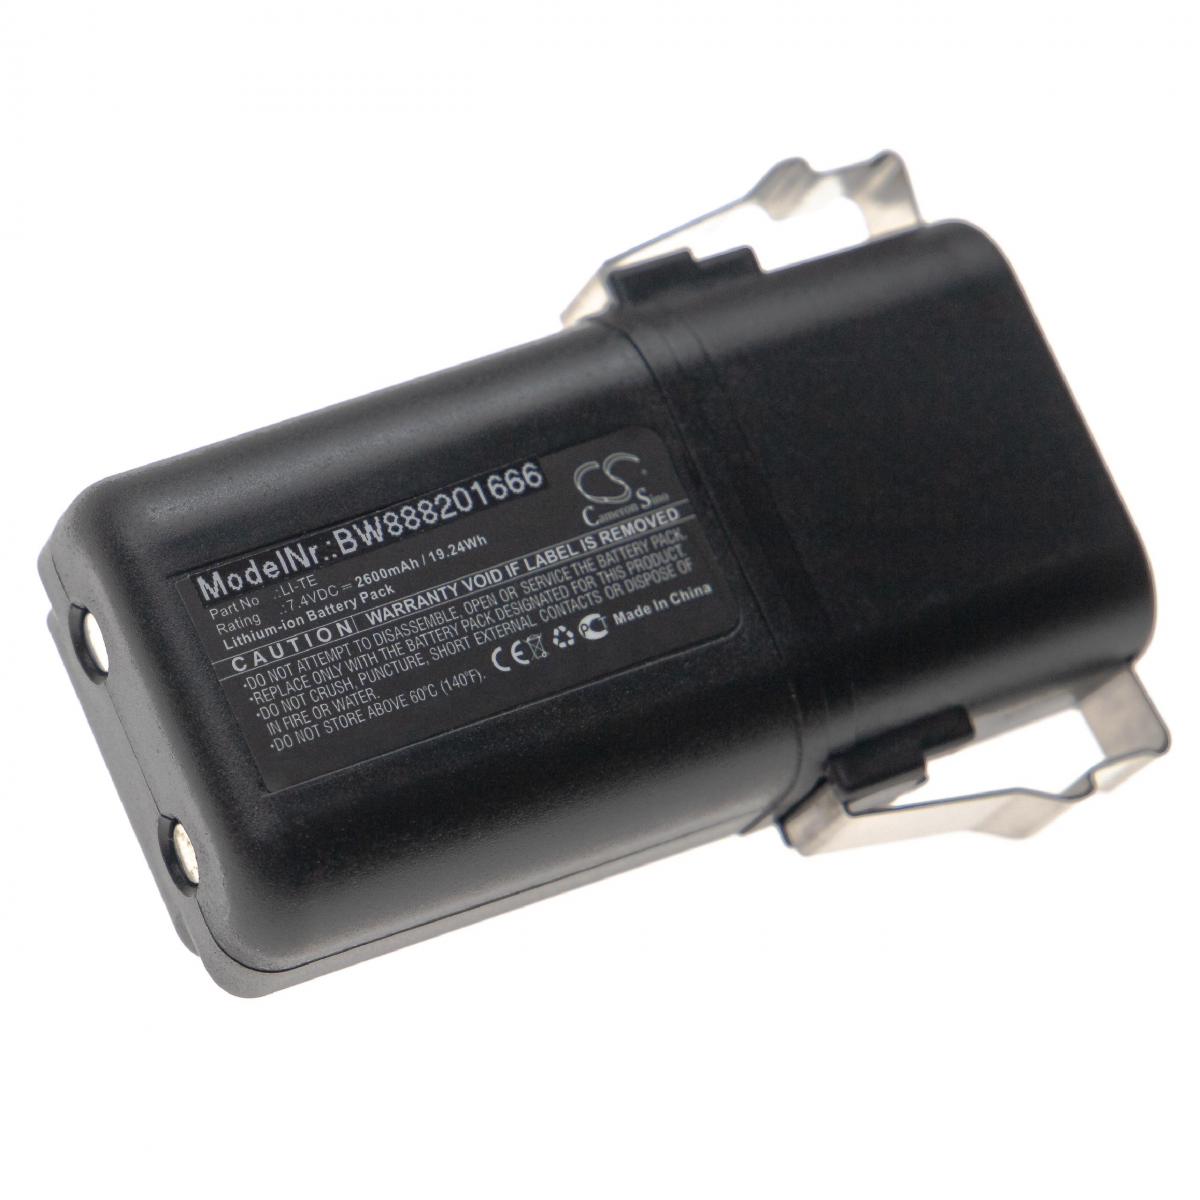 Vhbw - vhbw Batterie remplace Elca LI-TE pour télécommande industrielle (2600mAh, 7,4V, Li-Ion) - Autre appareil de mesure